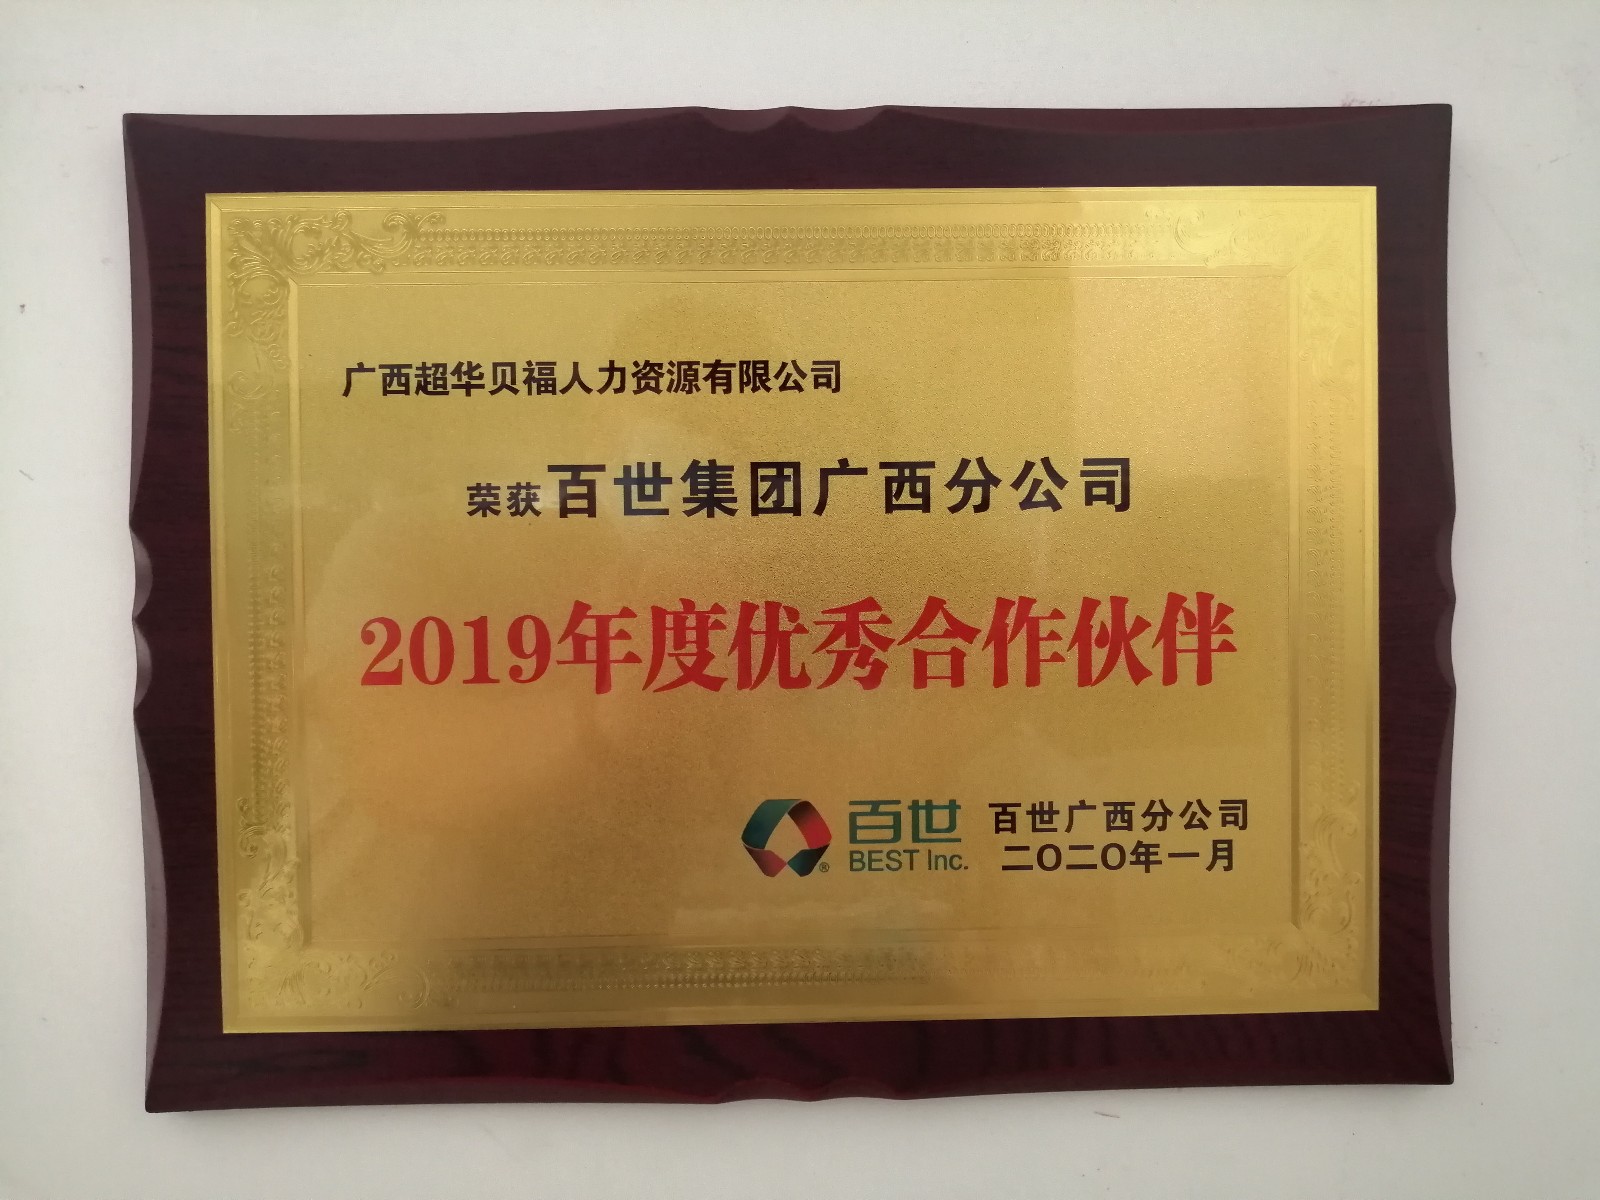 超华公司荣获2019年度百世集团合作伙伴奖